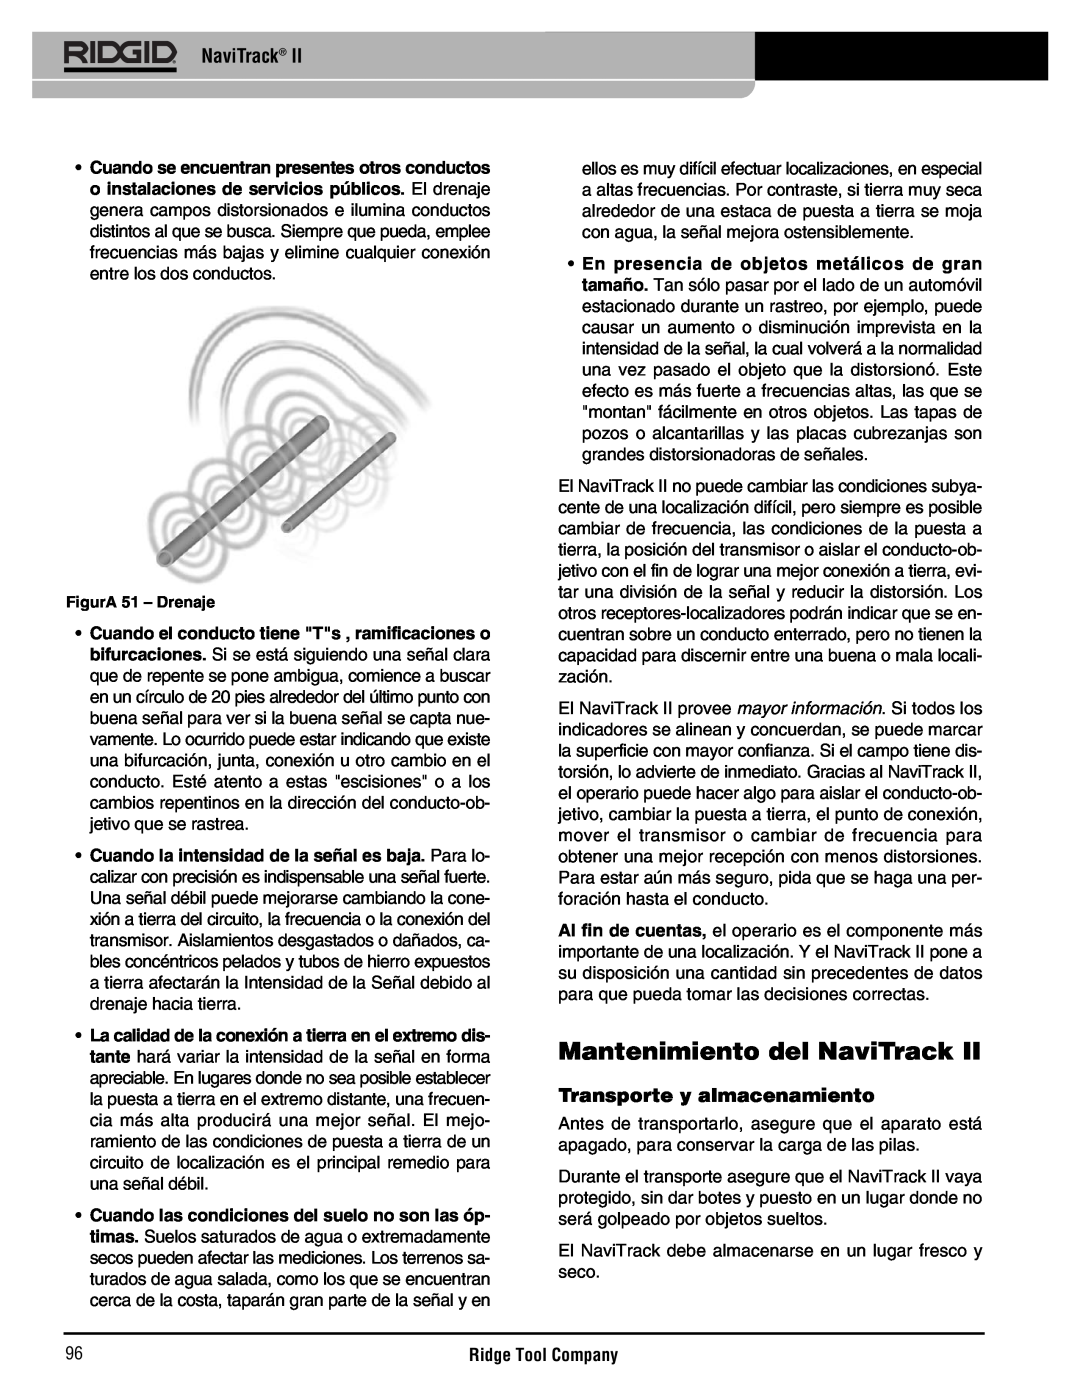 RIDGID Metal Detector manual Mantenimiento del NaviTrack, Transporte y almacenamiento 